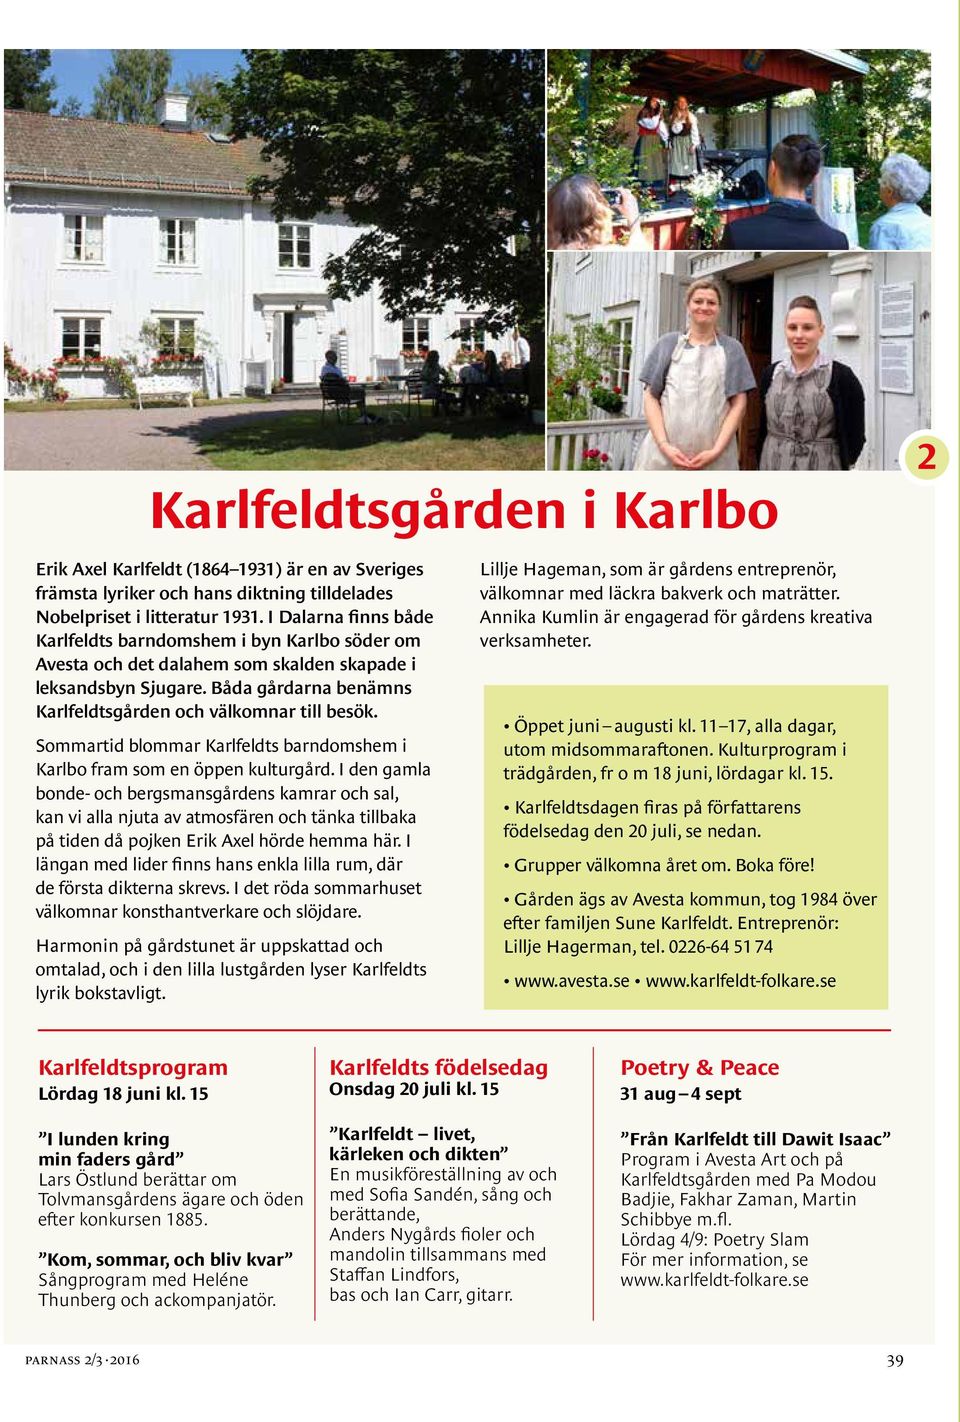 Sommartid blommar Karlfeldts barndomshem i Karlbo fram som en öppen kulturgård.